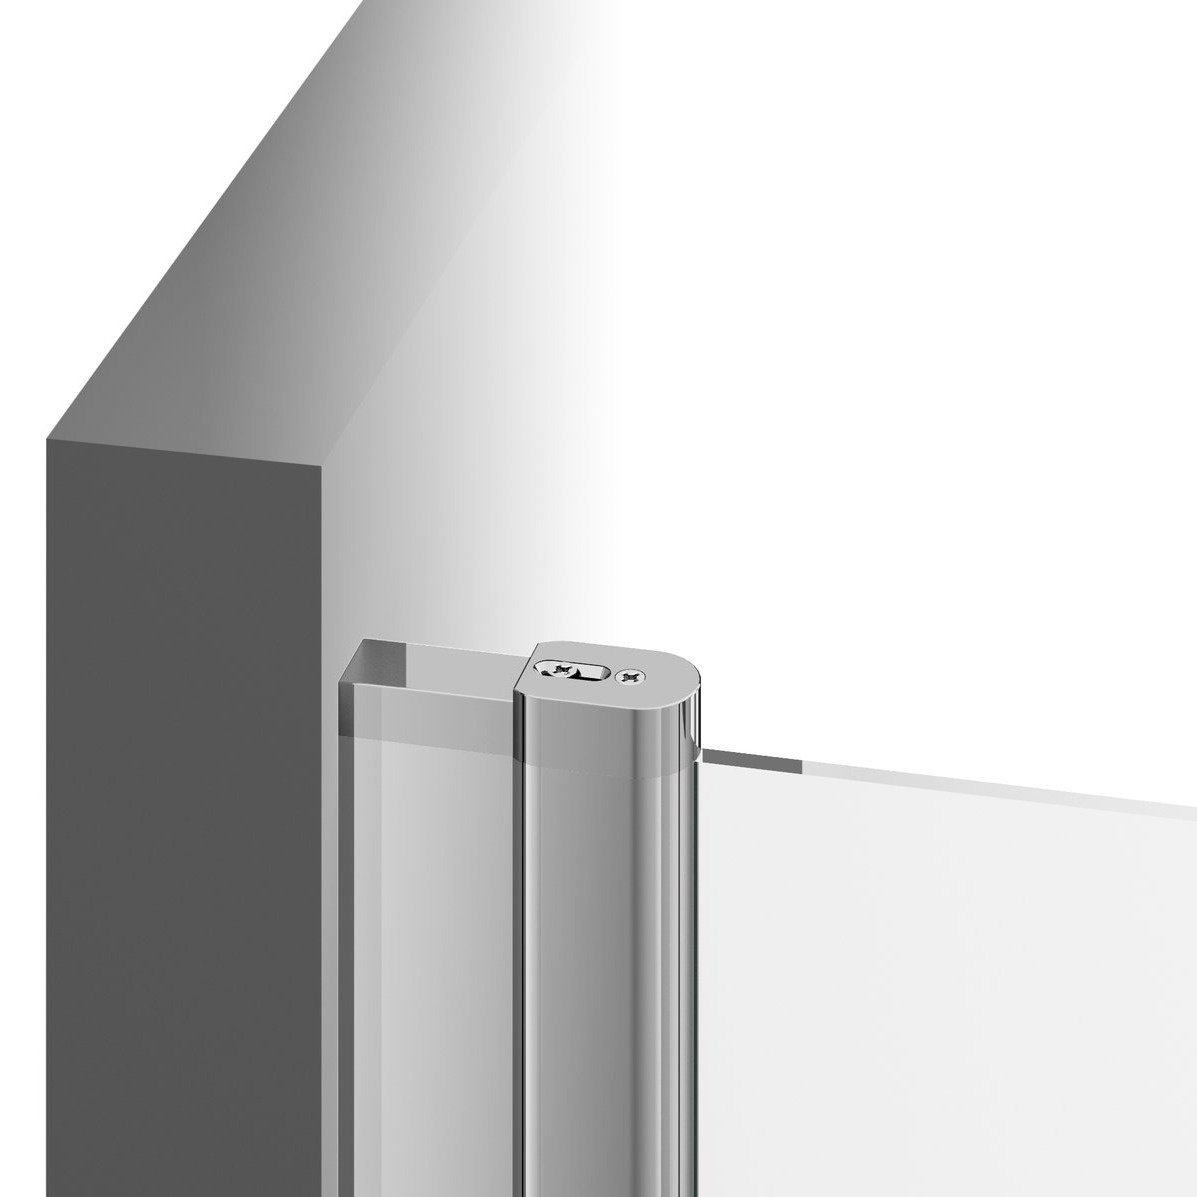 Дверь стеклянная для душевой ниши универсальная распашная двухсекционная RAVAK CHROME CSD2-110 195x110см прозрачное стекло 6мм профиль хром 0QVDCC00Z1